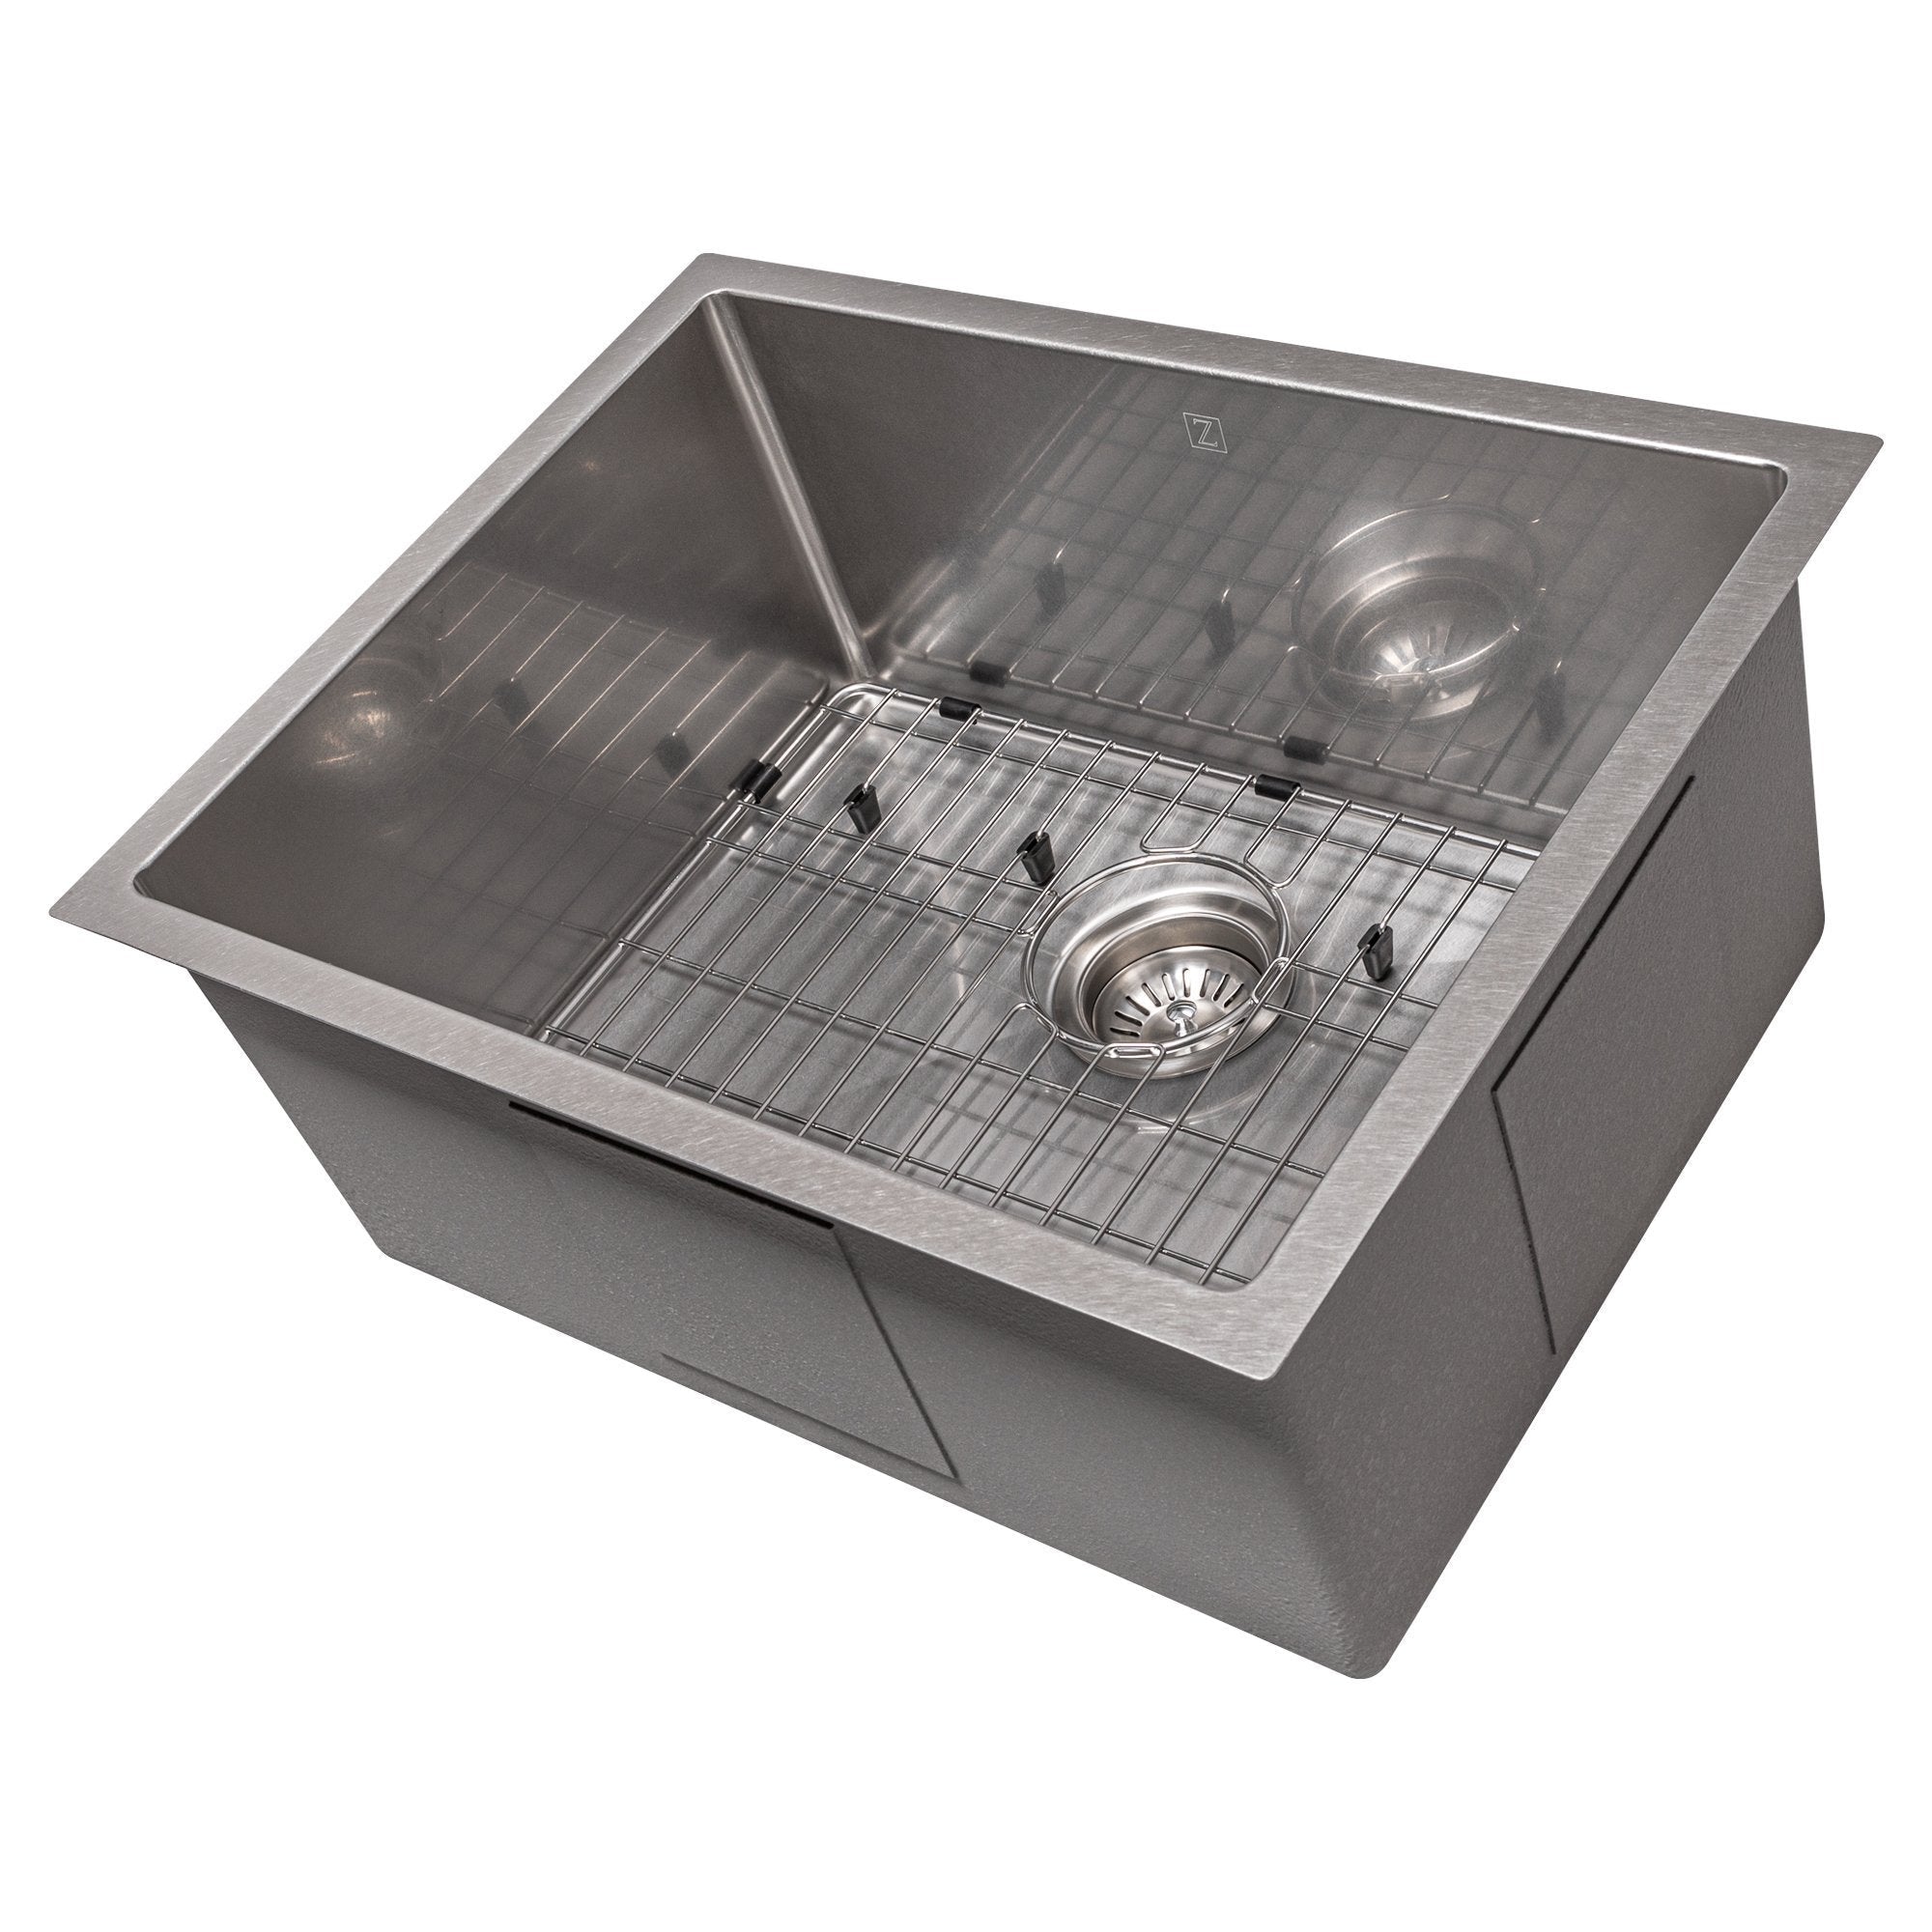 ZLINE 23" Classic Series Undermount Single Bowl Sink (SRS) - Rustic Kitchen & Bath - Sinks - ZLINE Kitchen and Bath